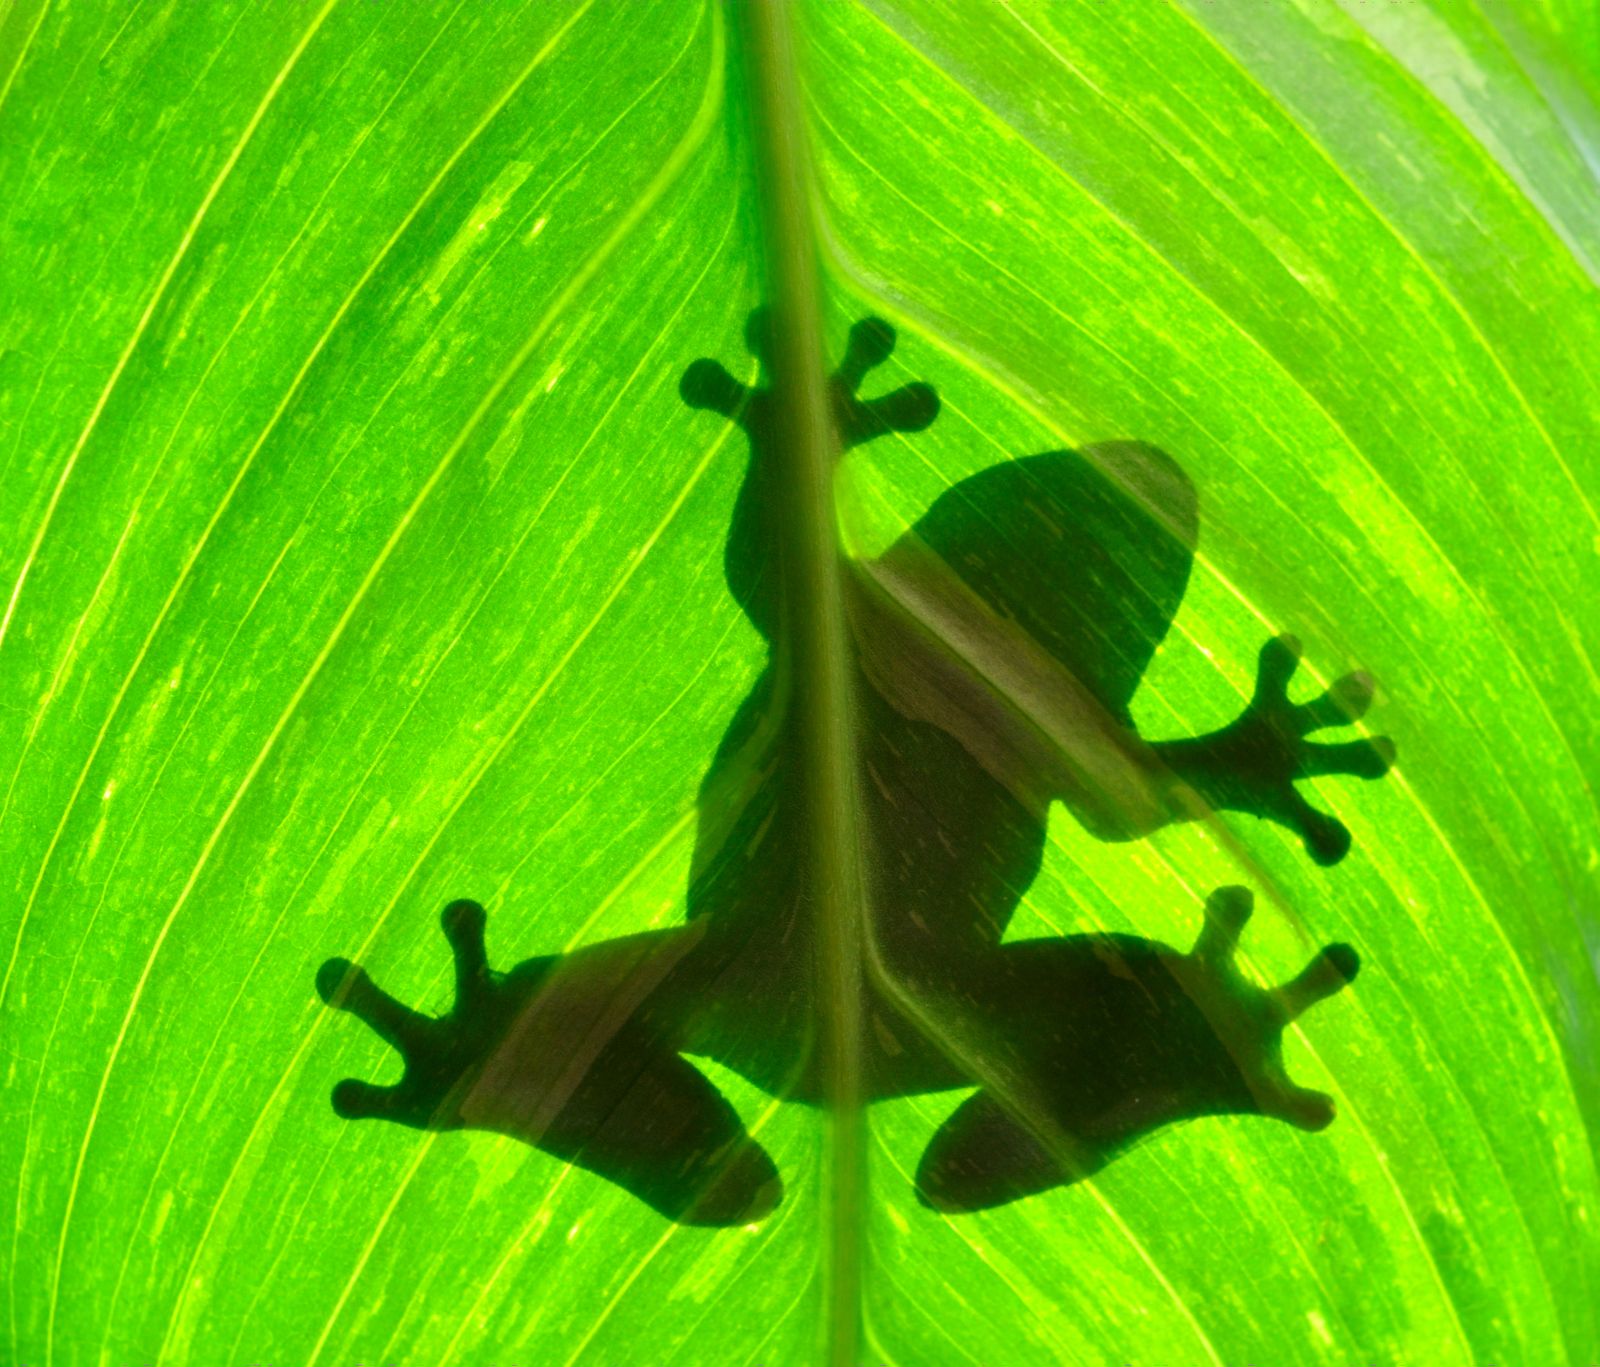 A frog seen through a leaf in Costa Rica